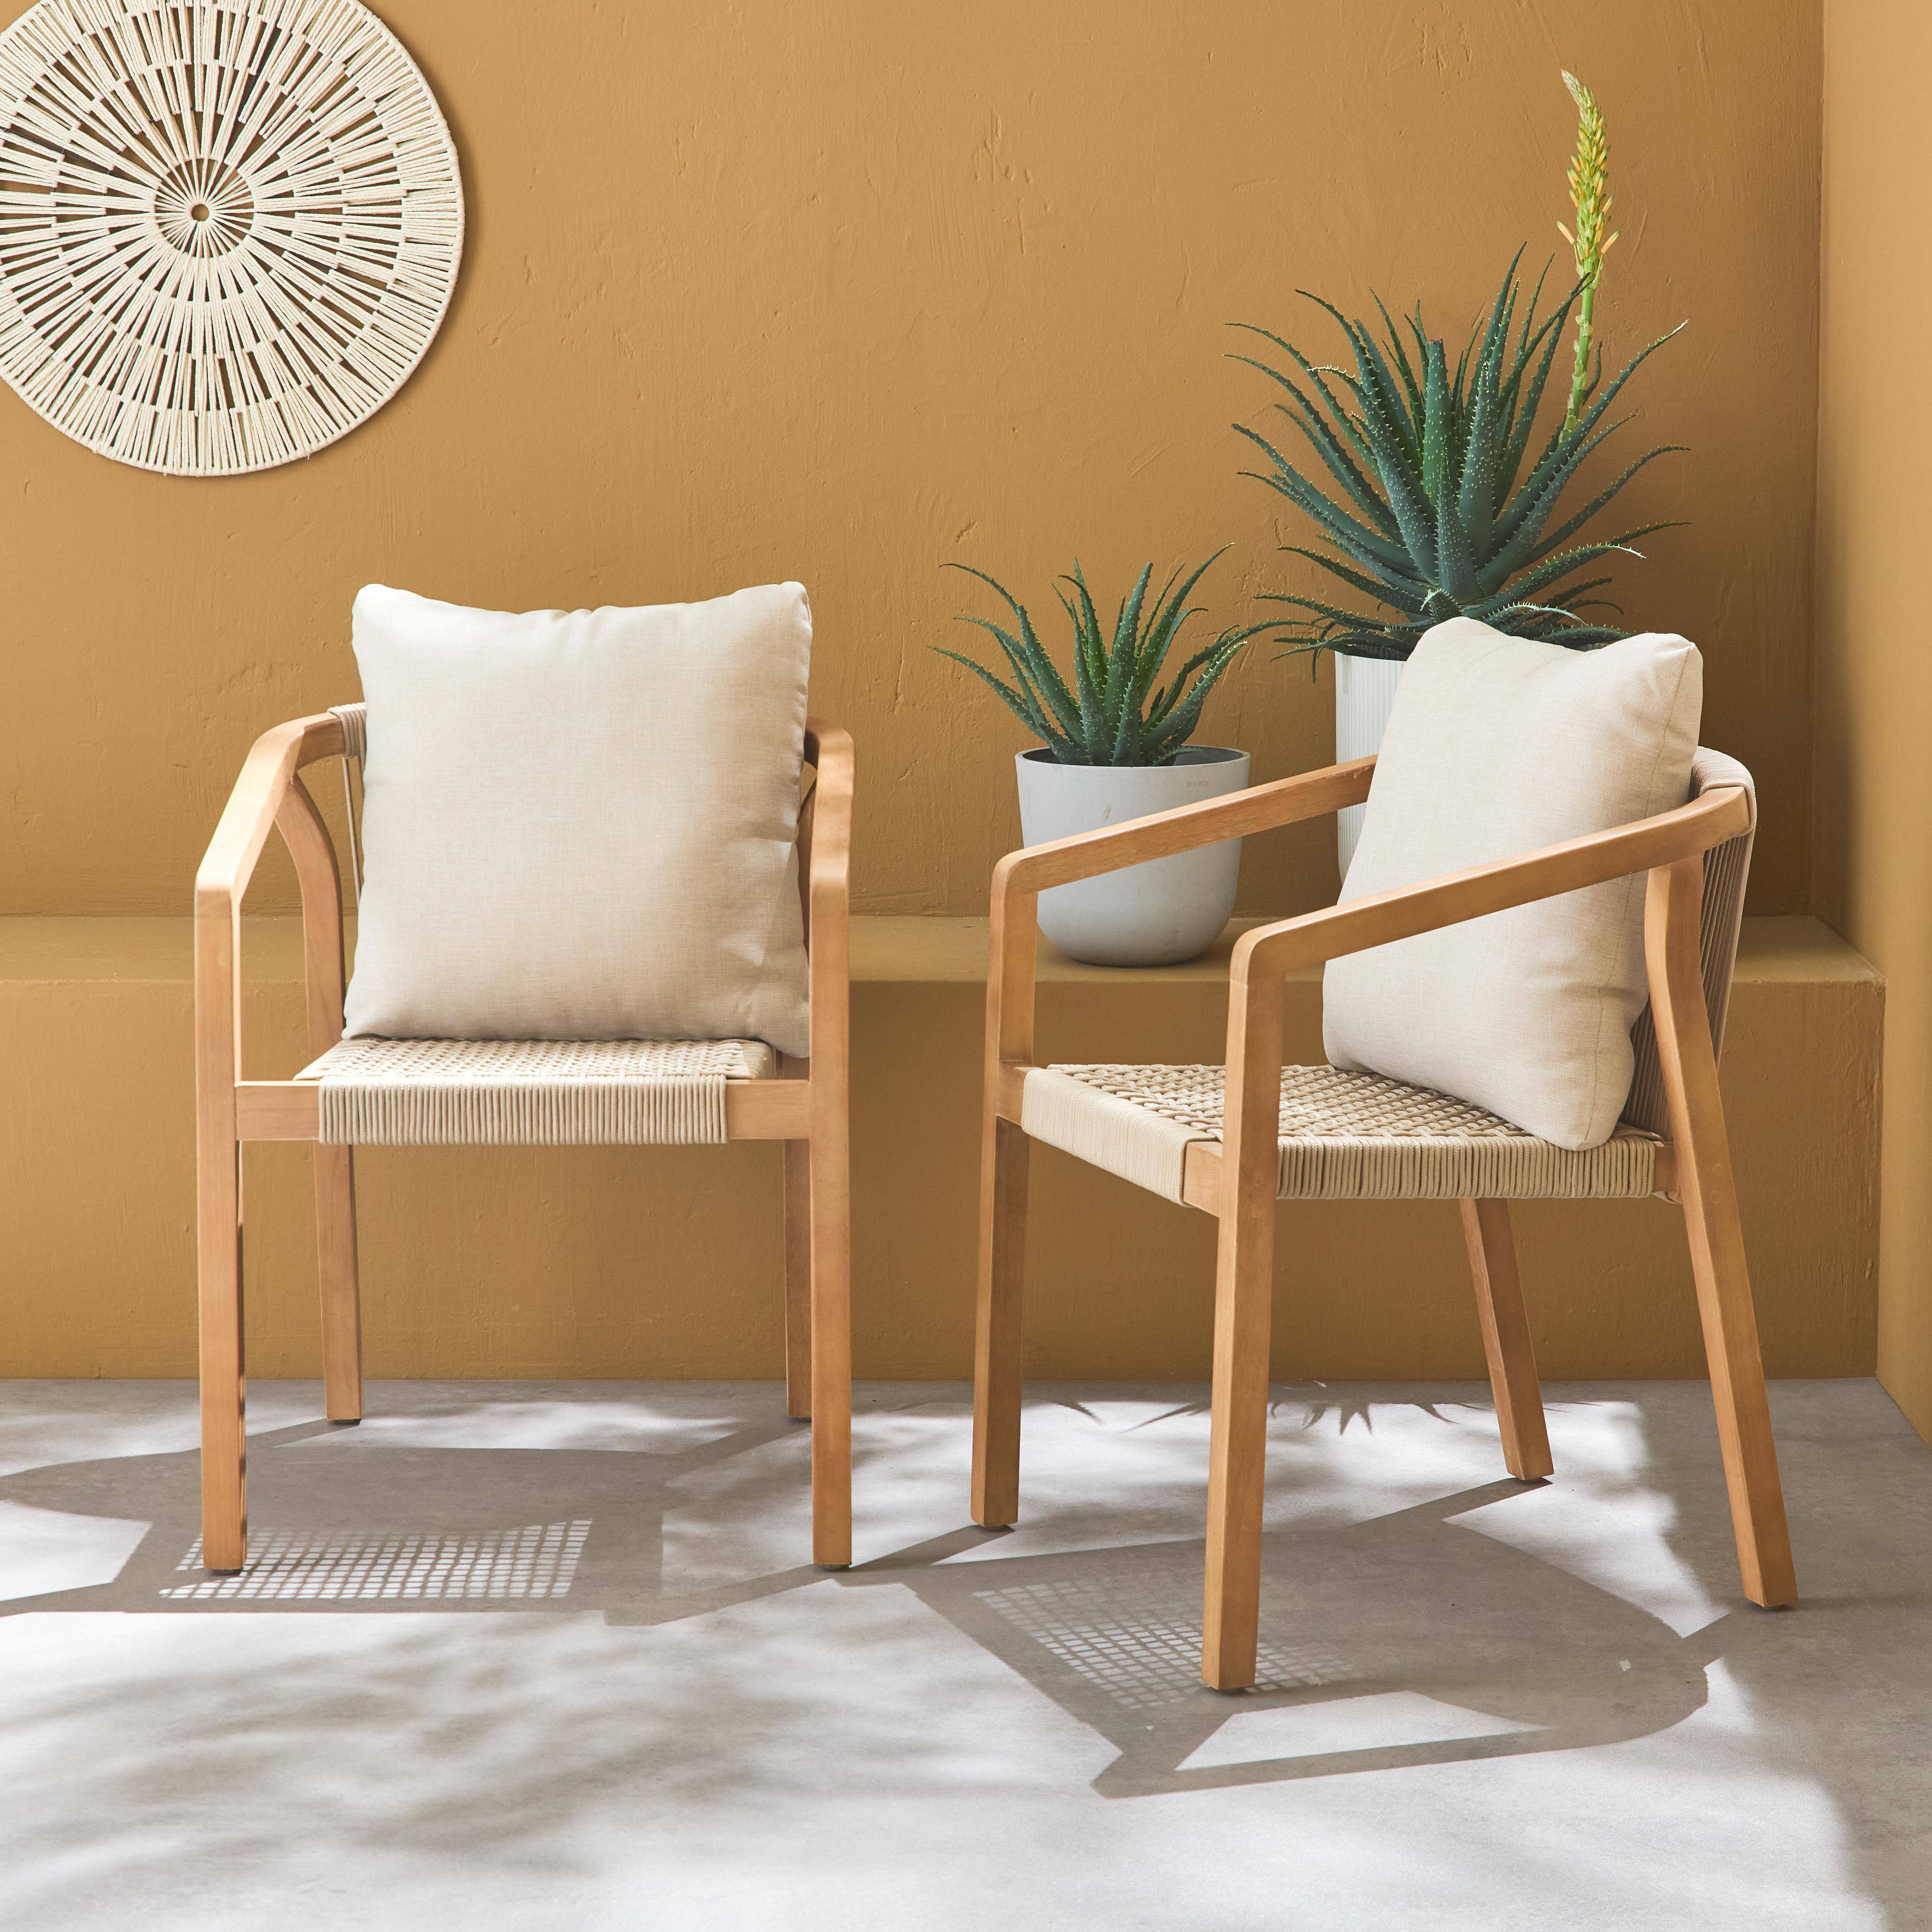 Juego de 2 sillas de jardín de madera y cuerda, apilables, para interior/exterior,sweeek,Photo1